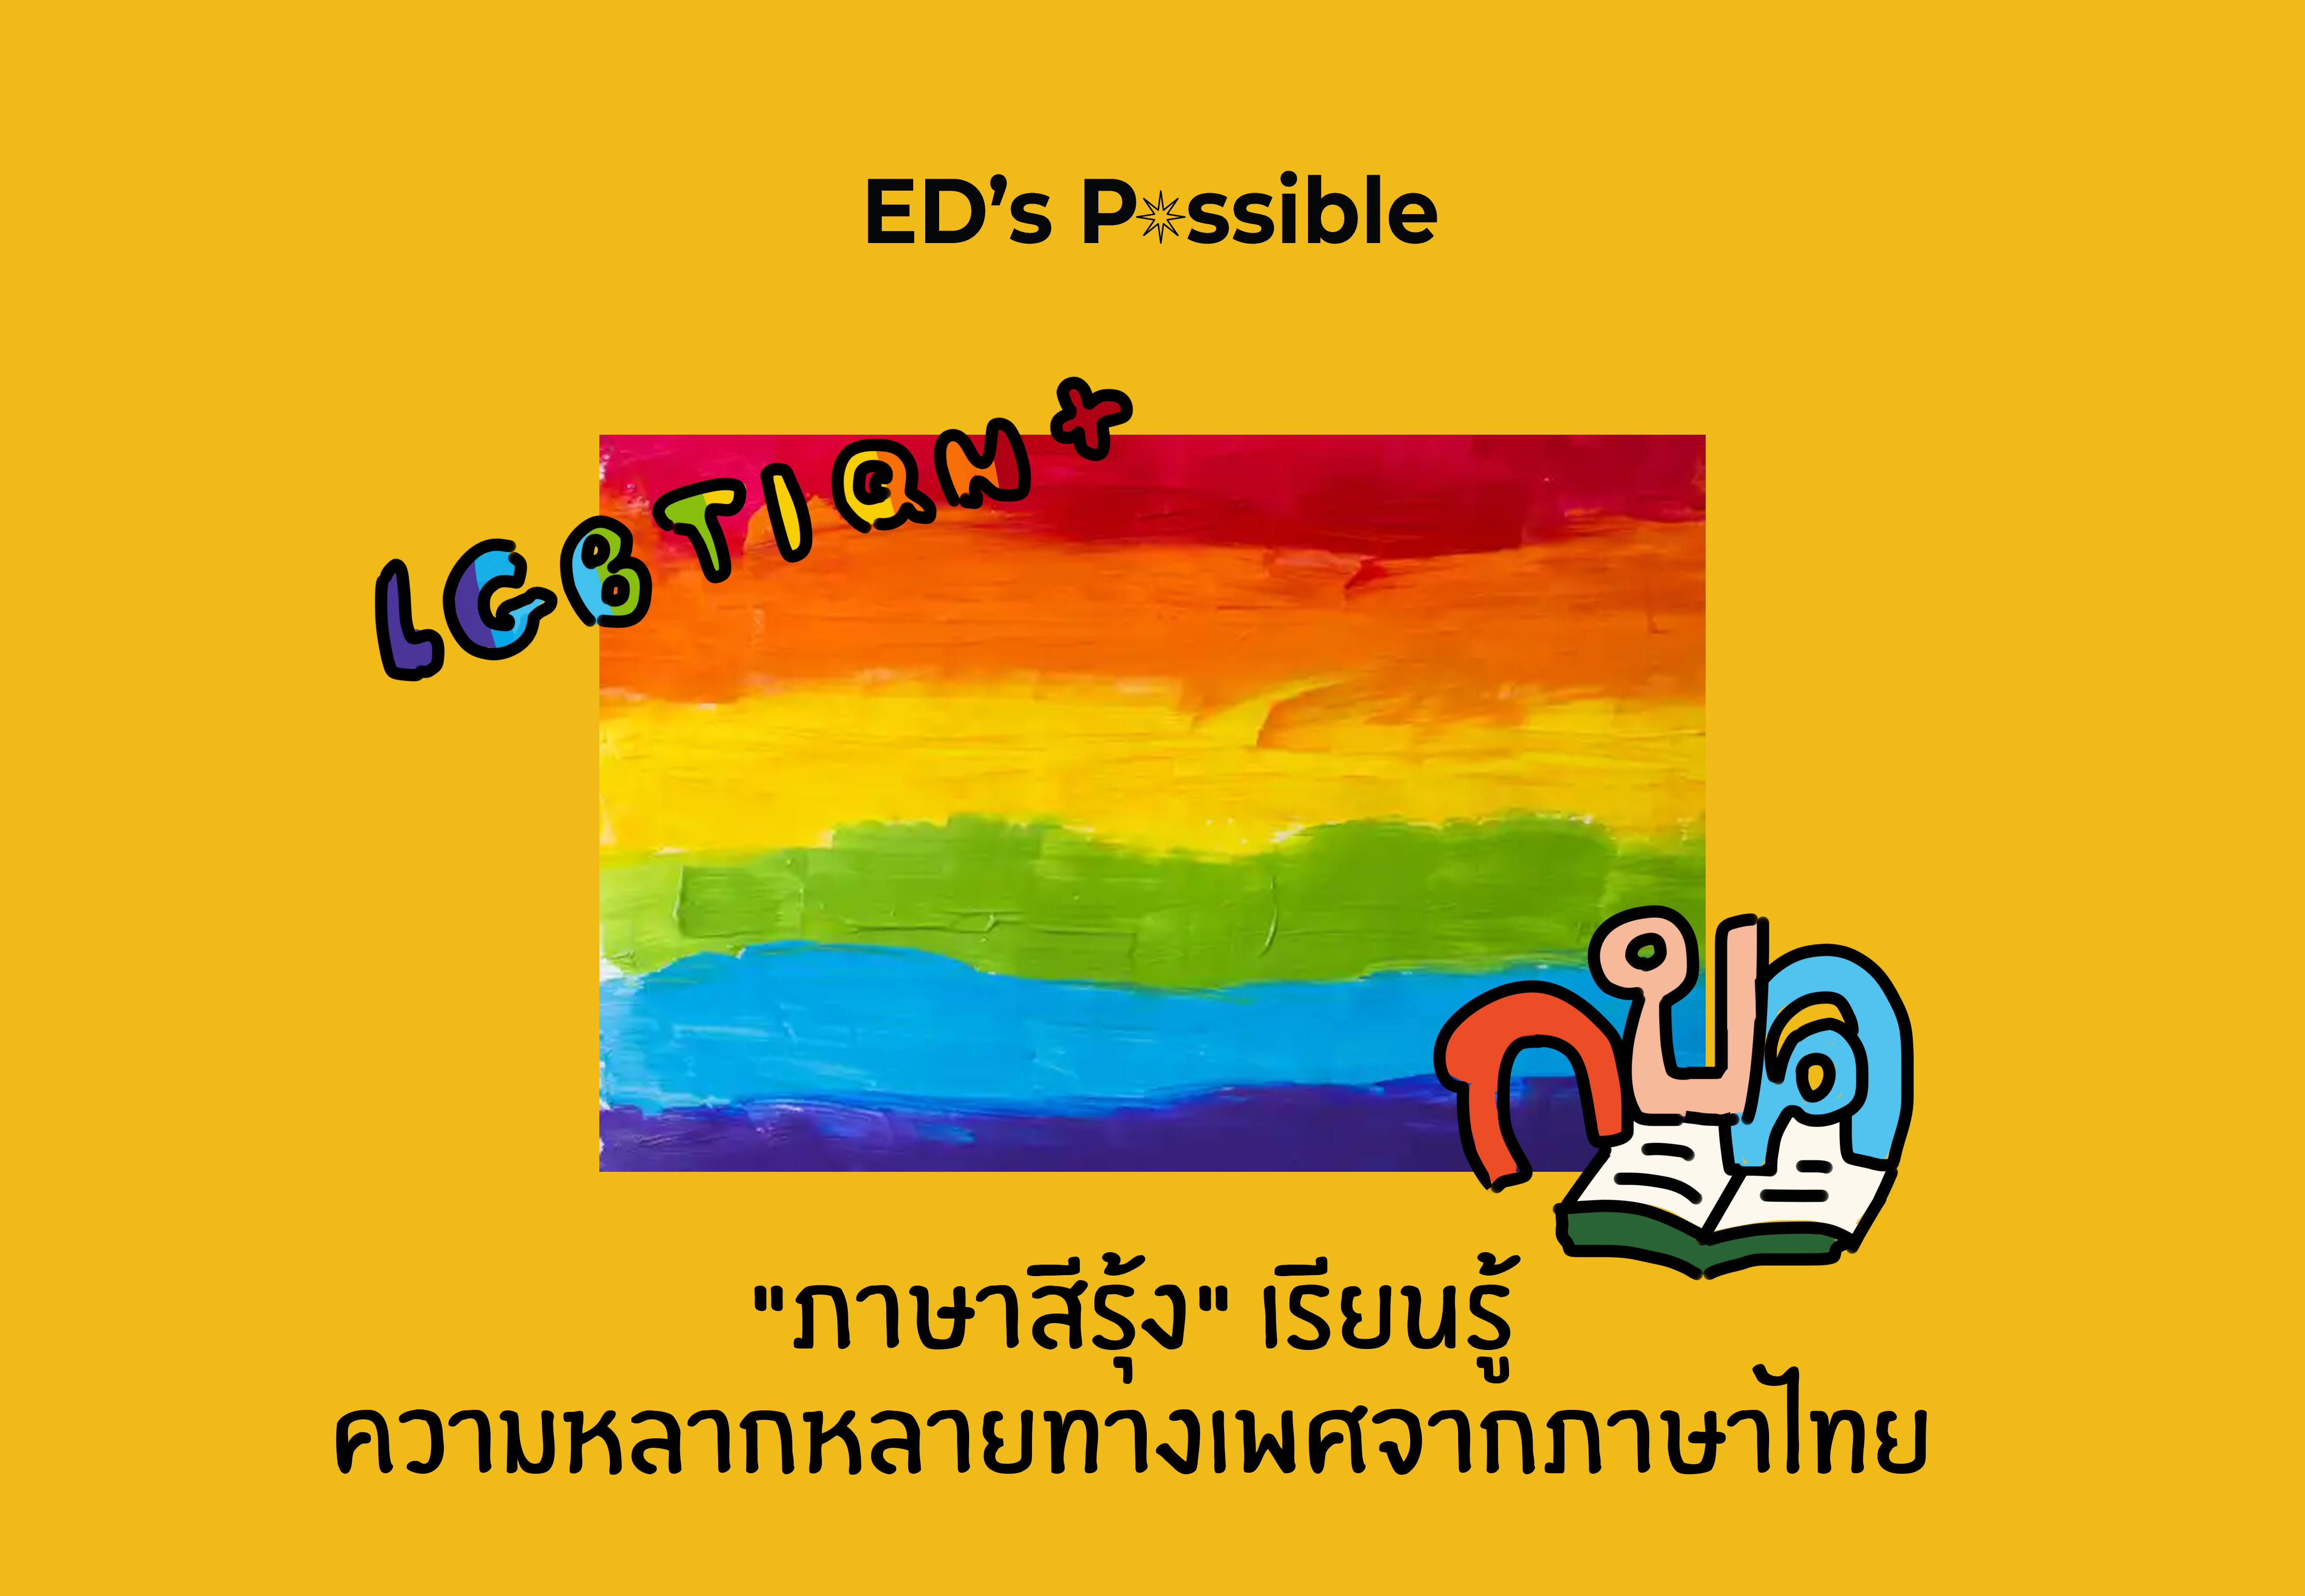 ภาพประกอบไอเดีย "ภาษาสีรุ้ง" เรียนรู้ความหลากหลายทางเพศจากภาษาไทย